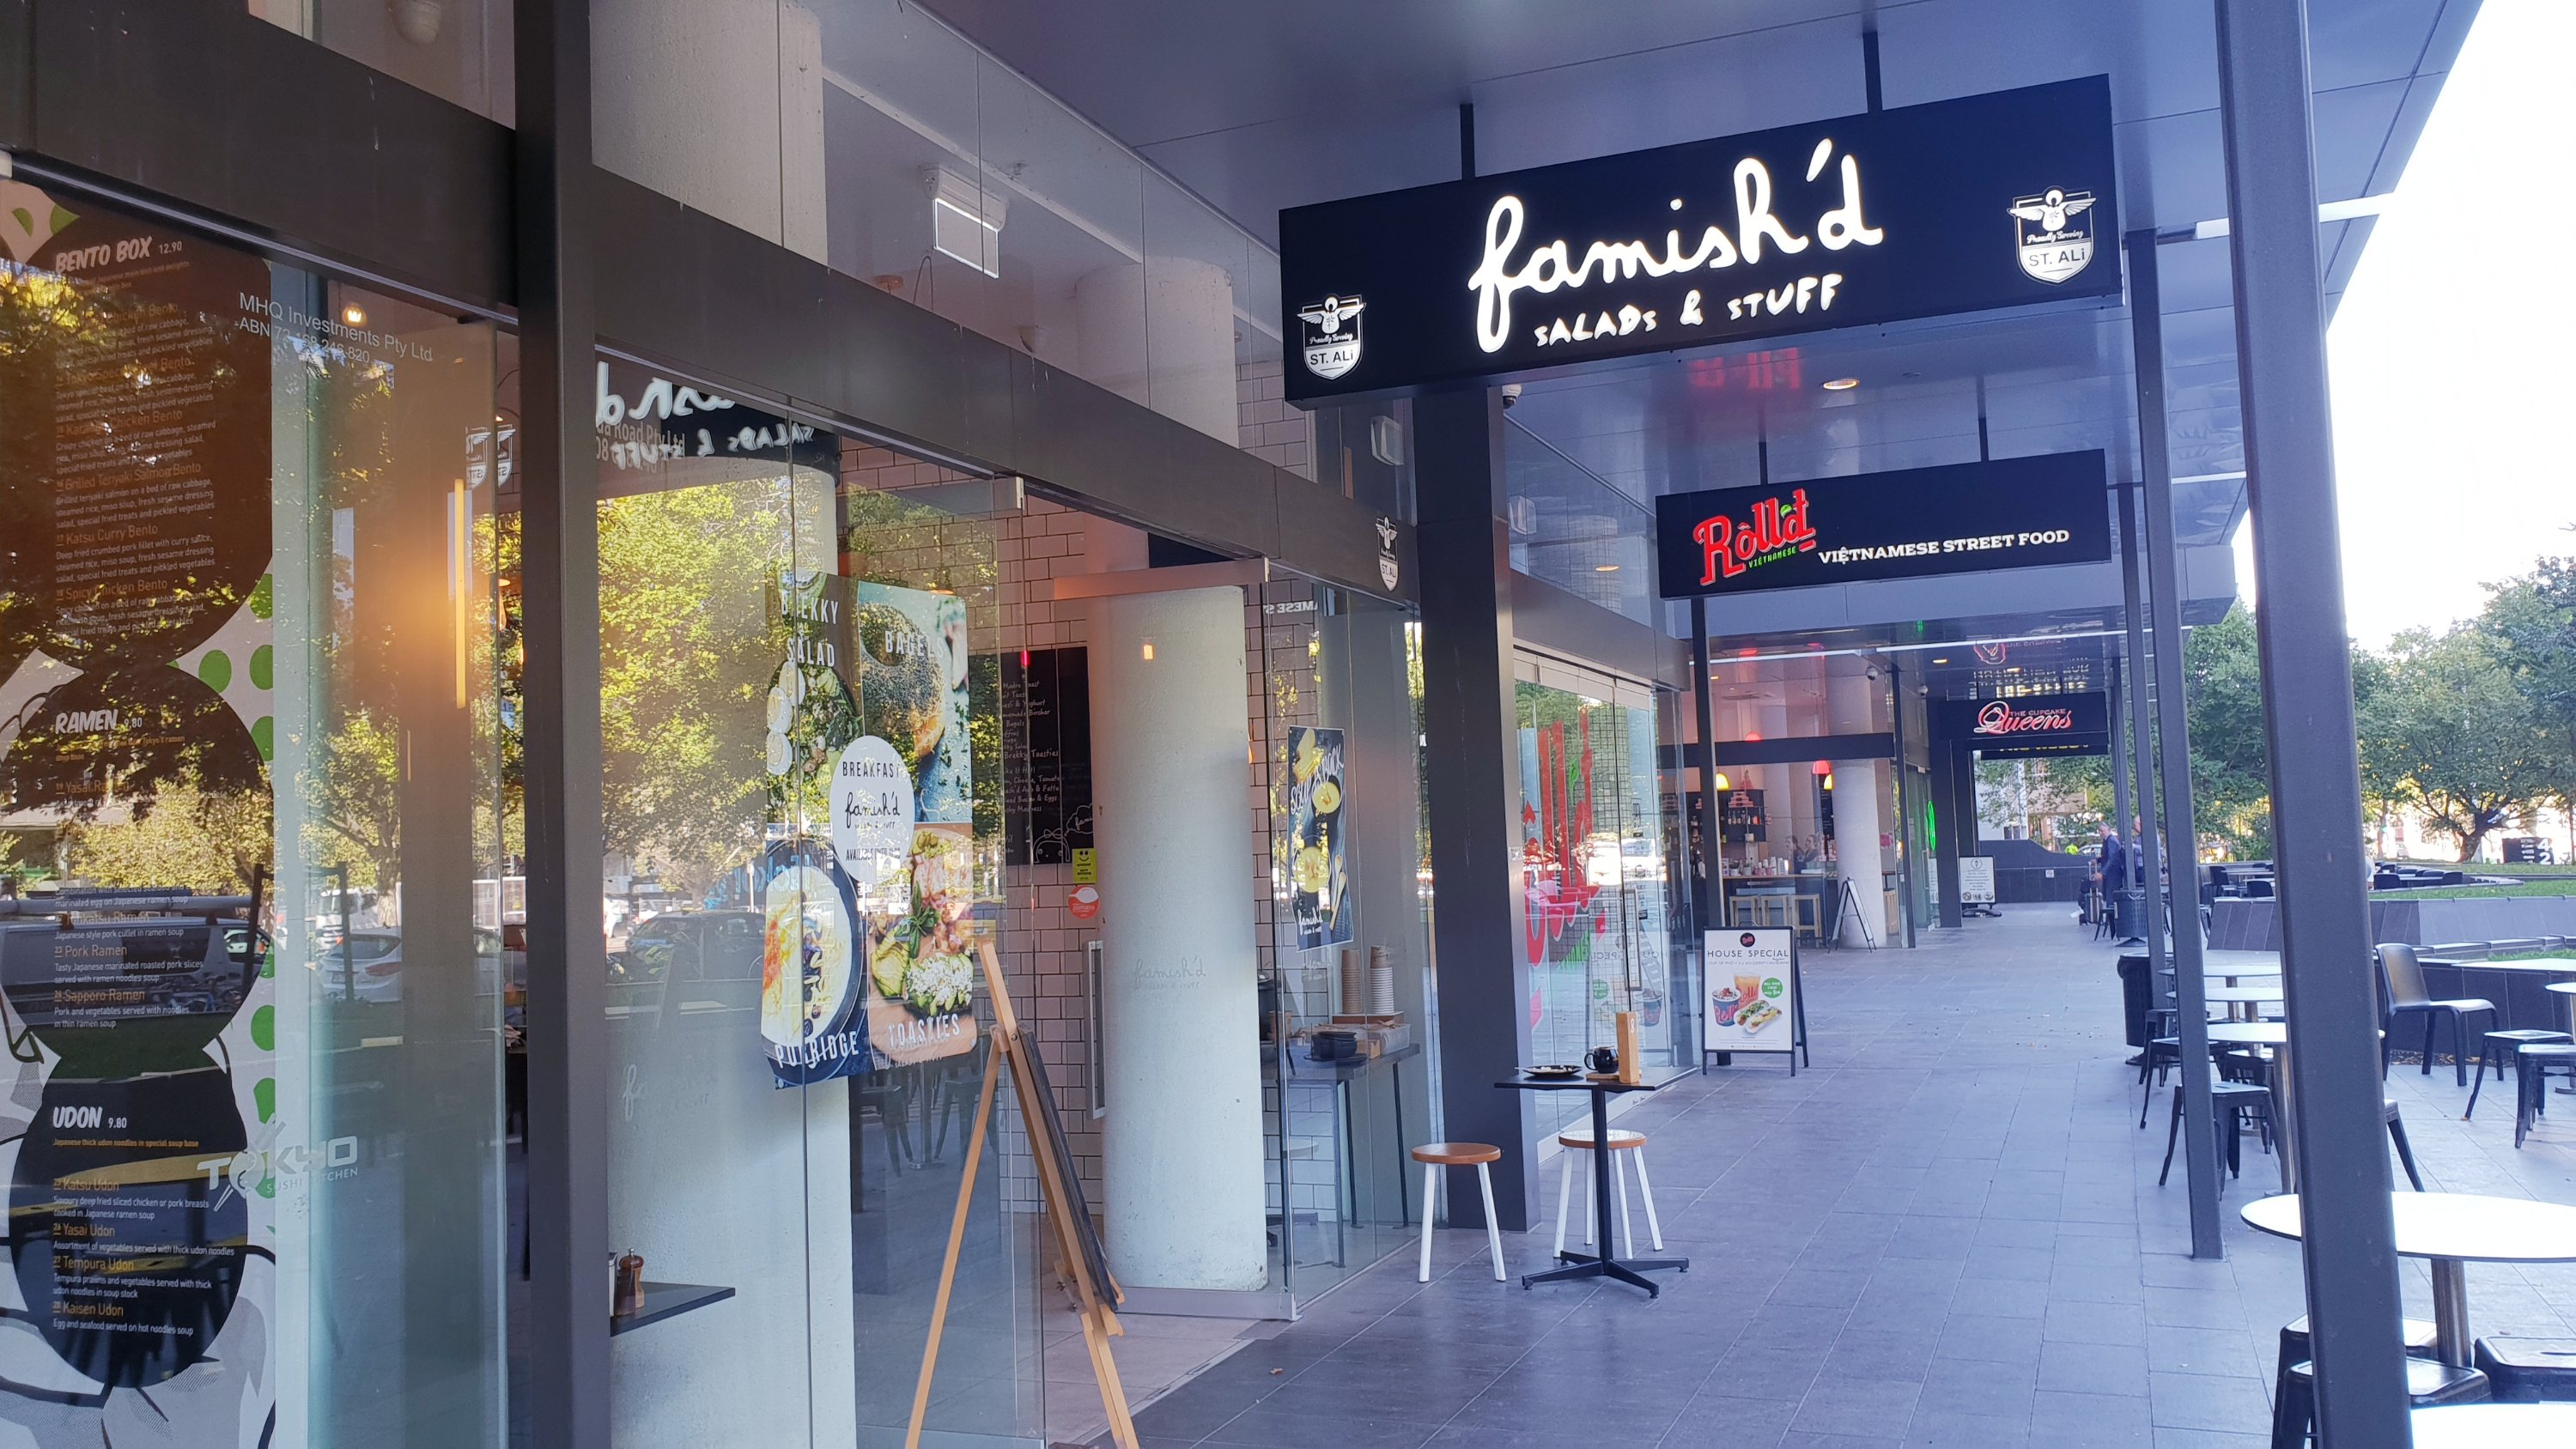 Famishd Cafe St Kilda Melbourne